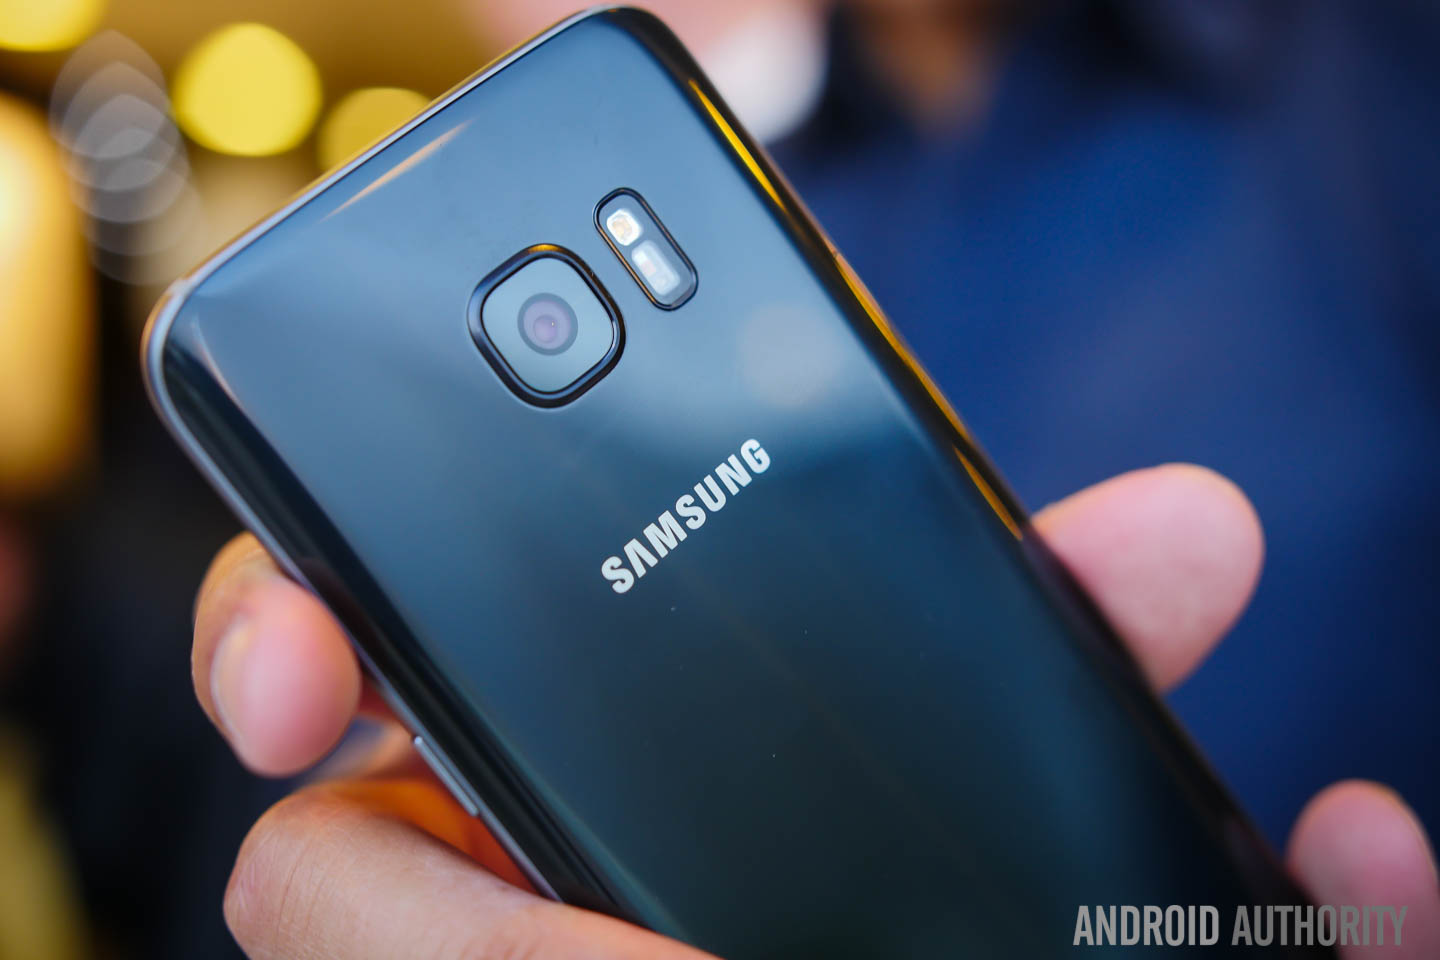 Storing verkopen Beschuldigingen Galaxy S7: Release Date - Price - Specs - Features